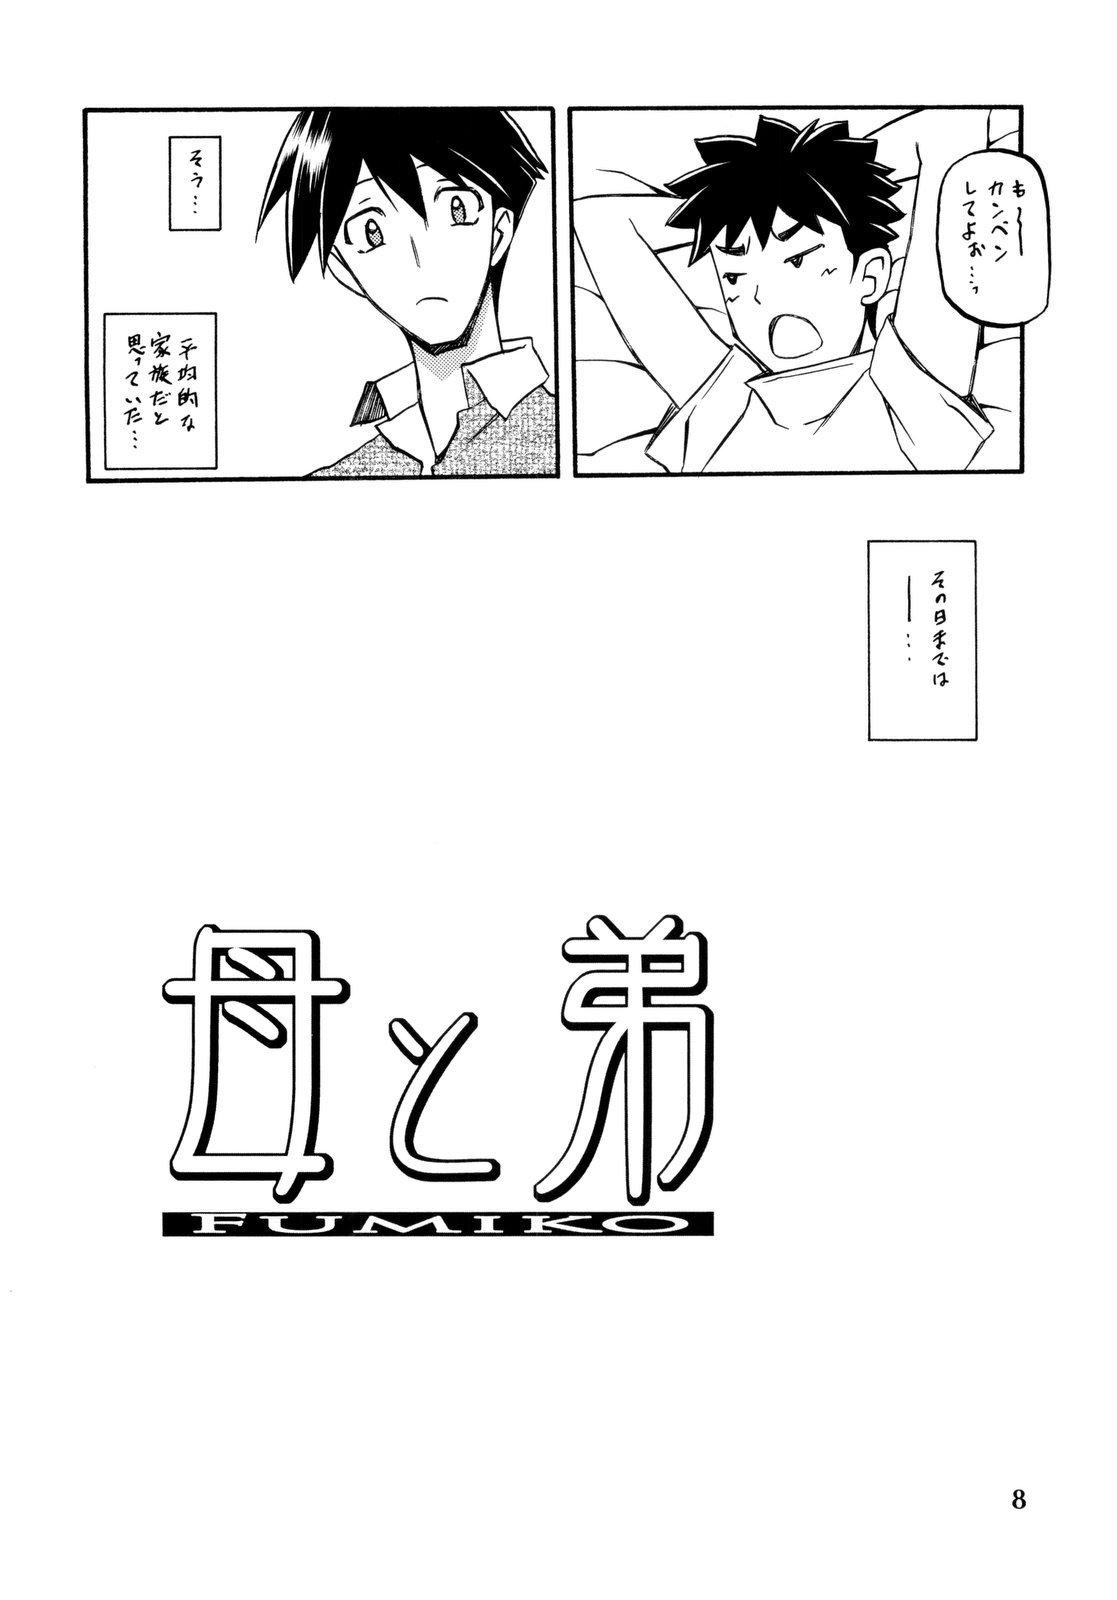 Amateur Blow Job Akebi no Mi - Fumiko - Akebi no mi Snatch - Page 8